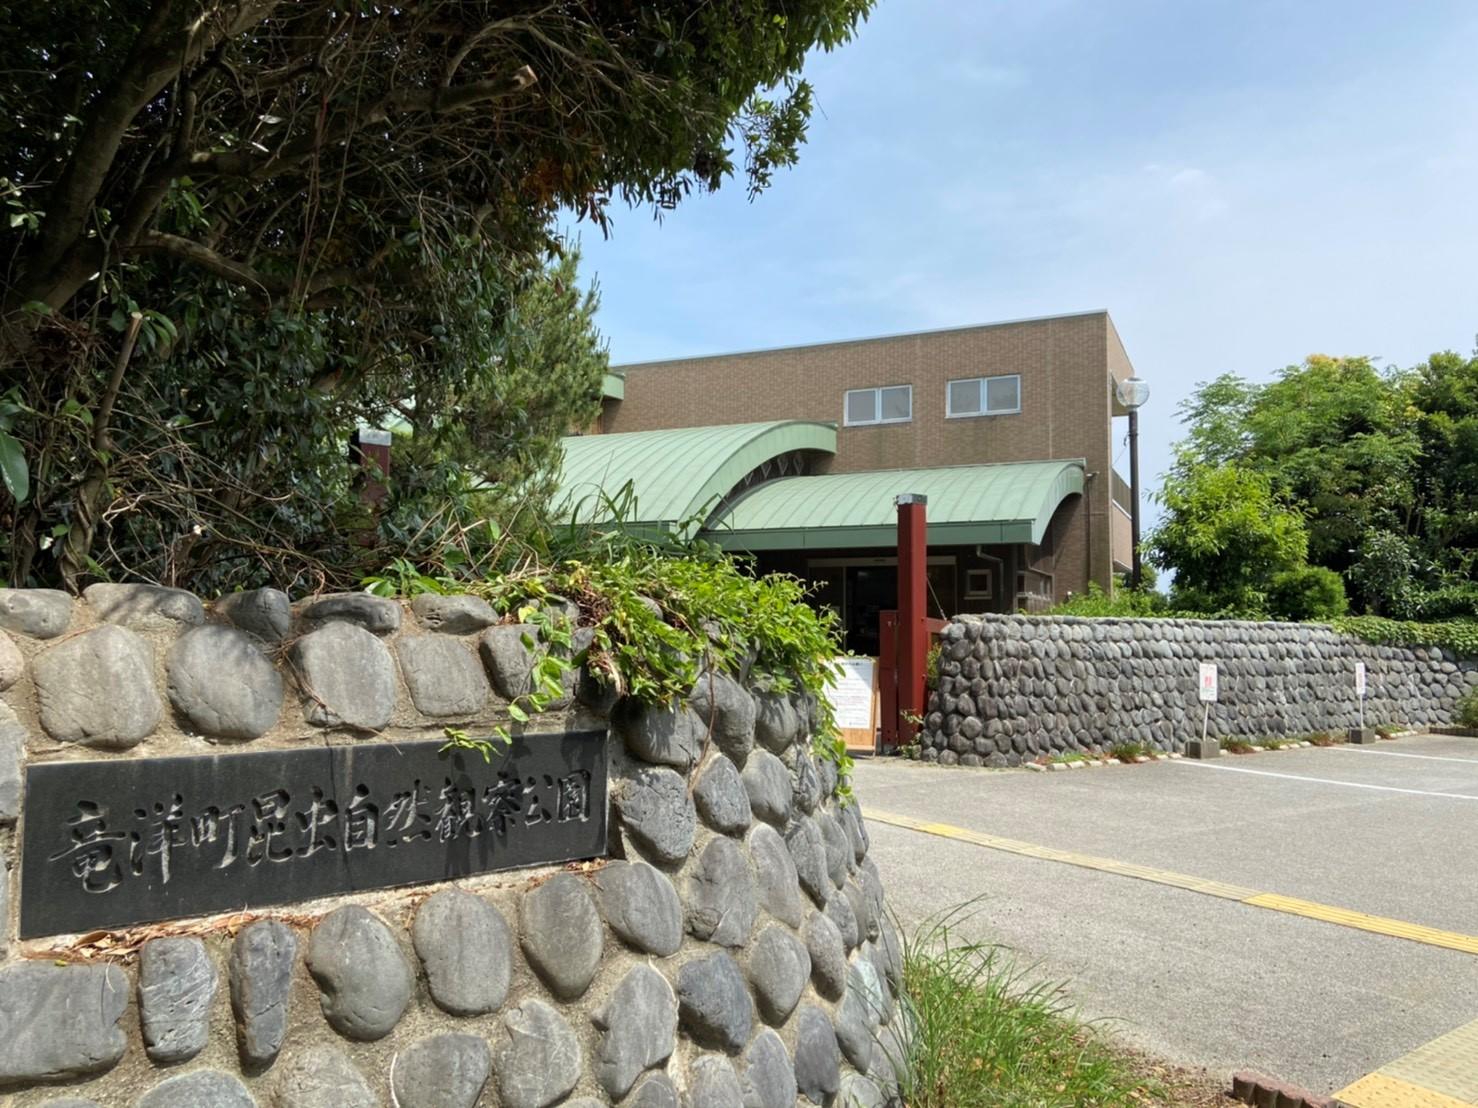 静岡県磐田市にある竜洋昆虫自然観察公園は、私が大学生のときにアルバイトでお世話になった場所です。